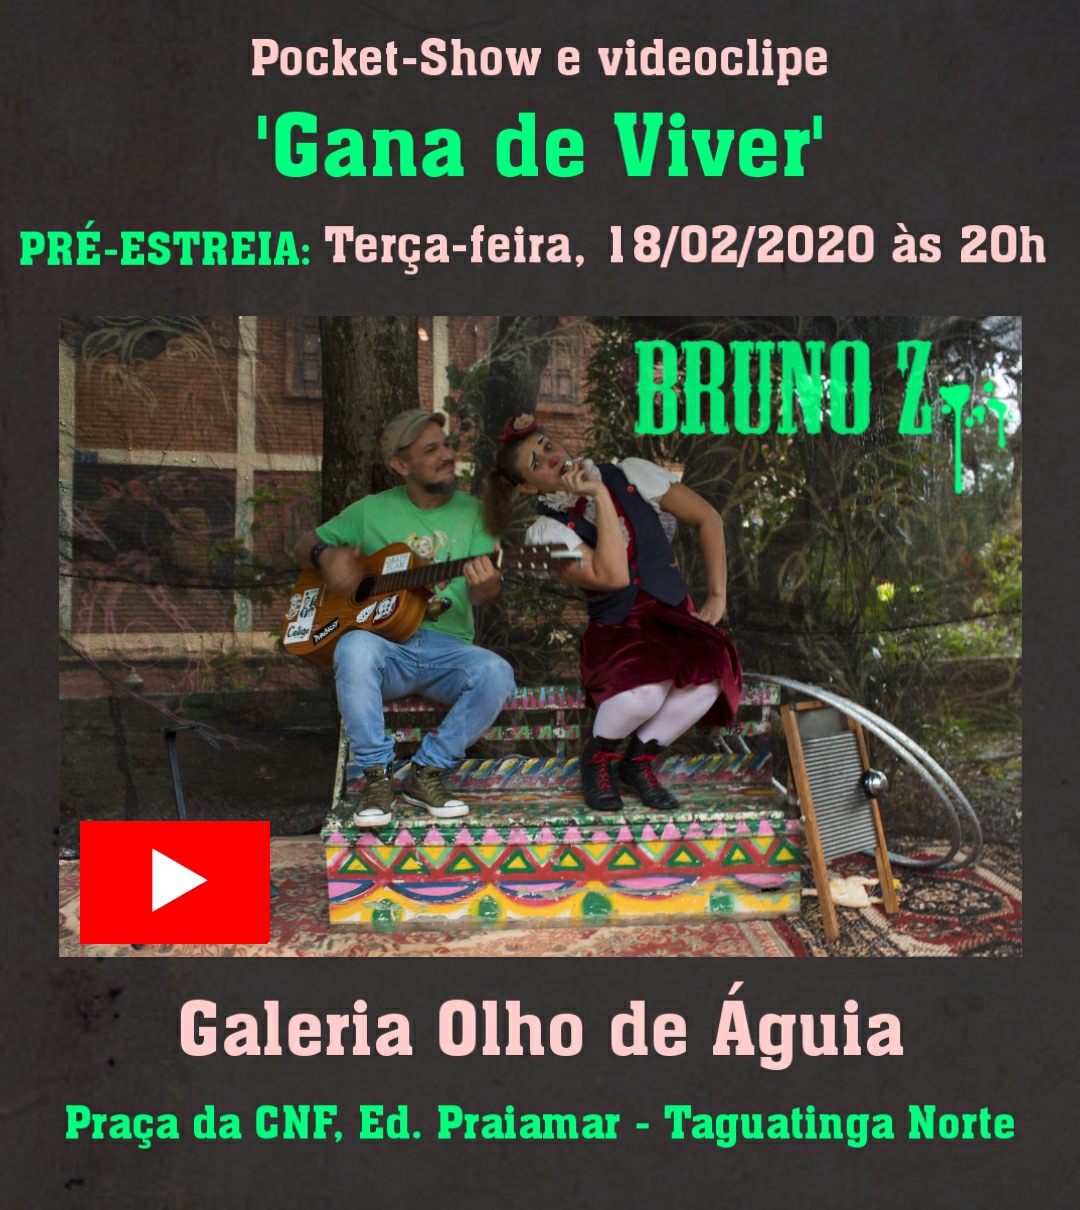 Bruno Z lan�a o videoclipe �Gana de Viver� com participa��o da palha�a Berinjela dia 18 na Galeria Olho de �guia.Taguatinga Norte.